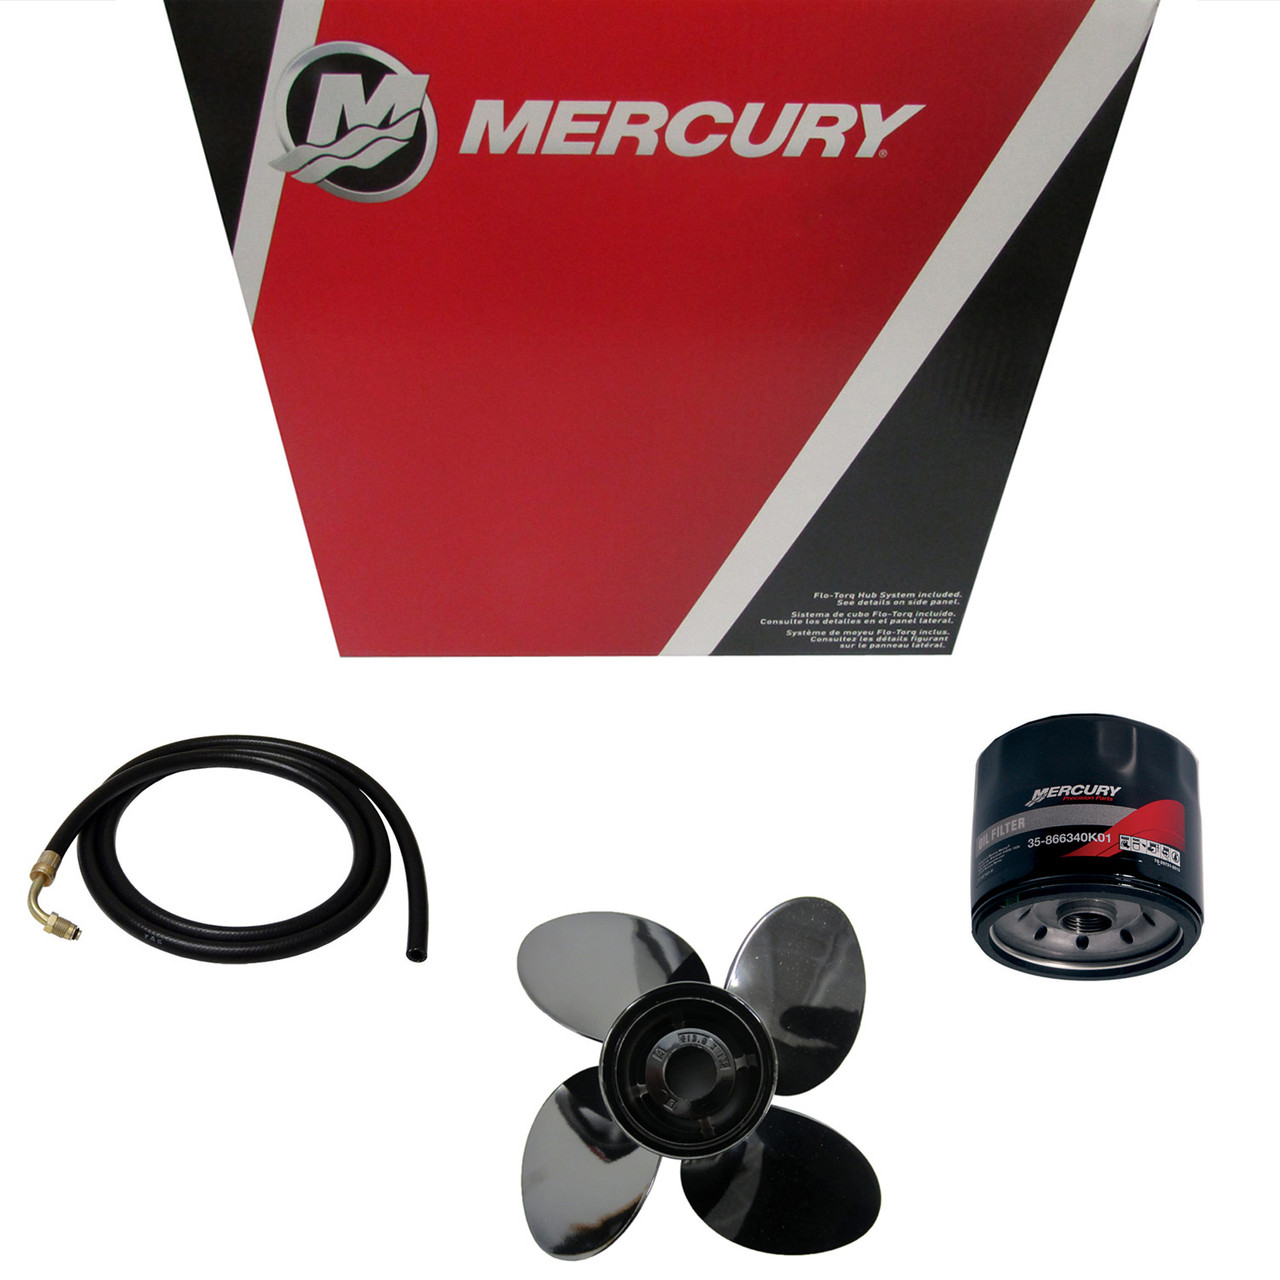 Mercury Marine / Mercruiser New OEM Tool-Shimming, 91-56048001